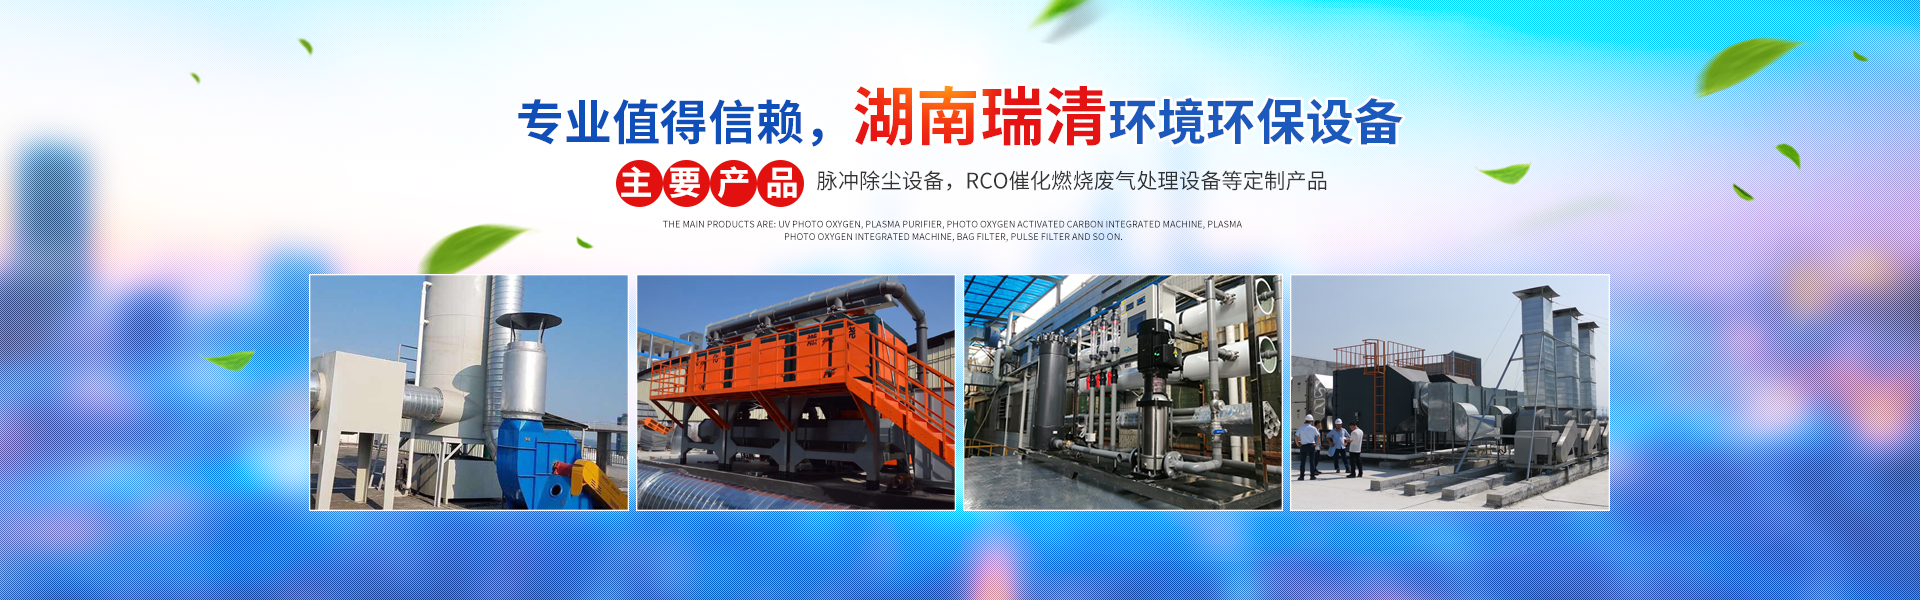 湖南瑞清环境设备有限公司_长沙粉尘处理设备工业除尘设备|催化燃烧设备